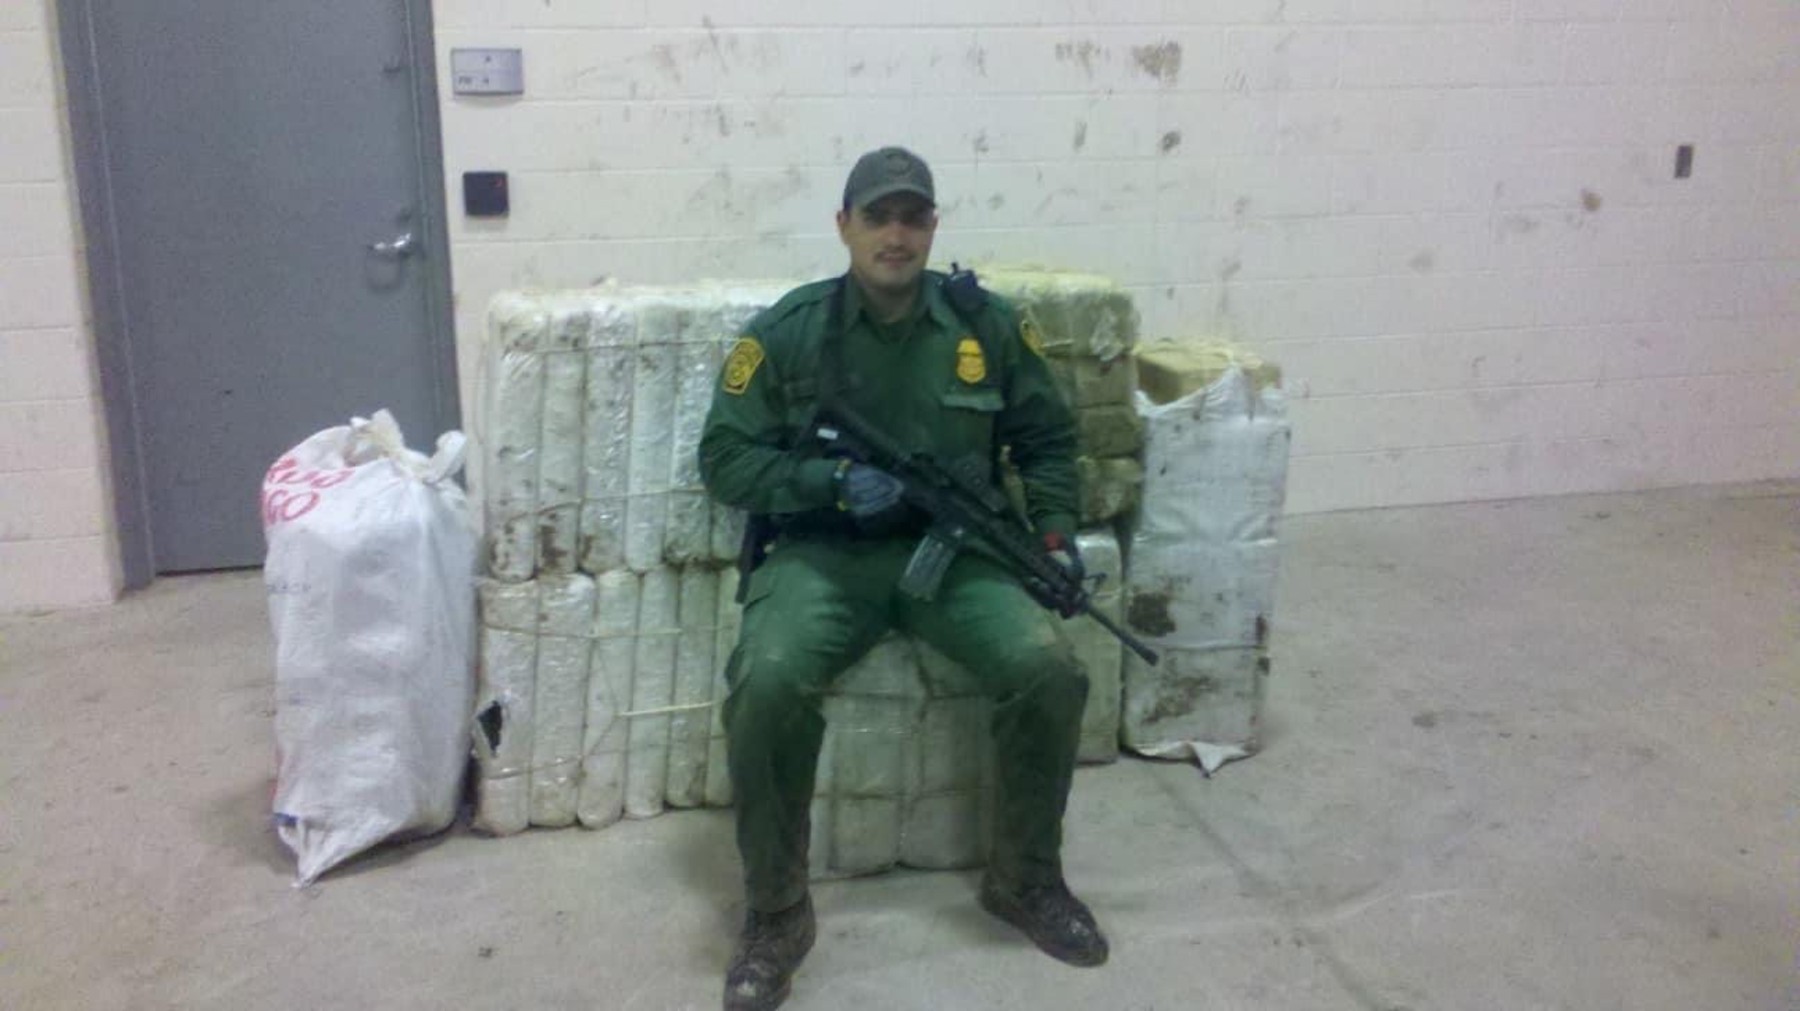 U.S. Border Patrol agent Raul Humberto Gonzalez, Jr. killed